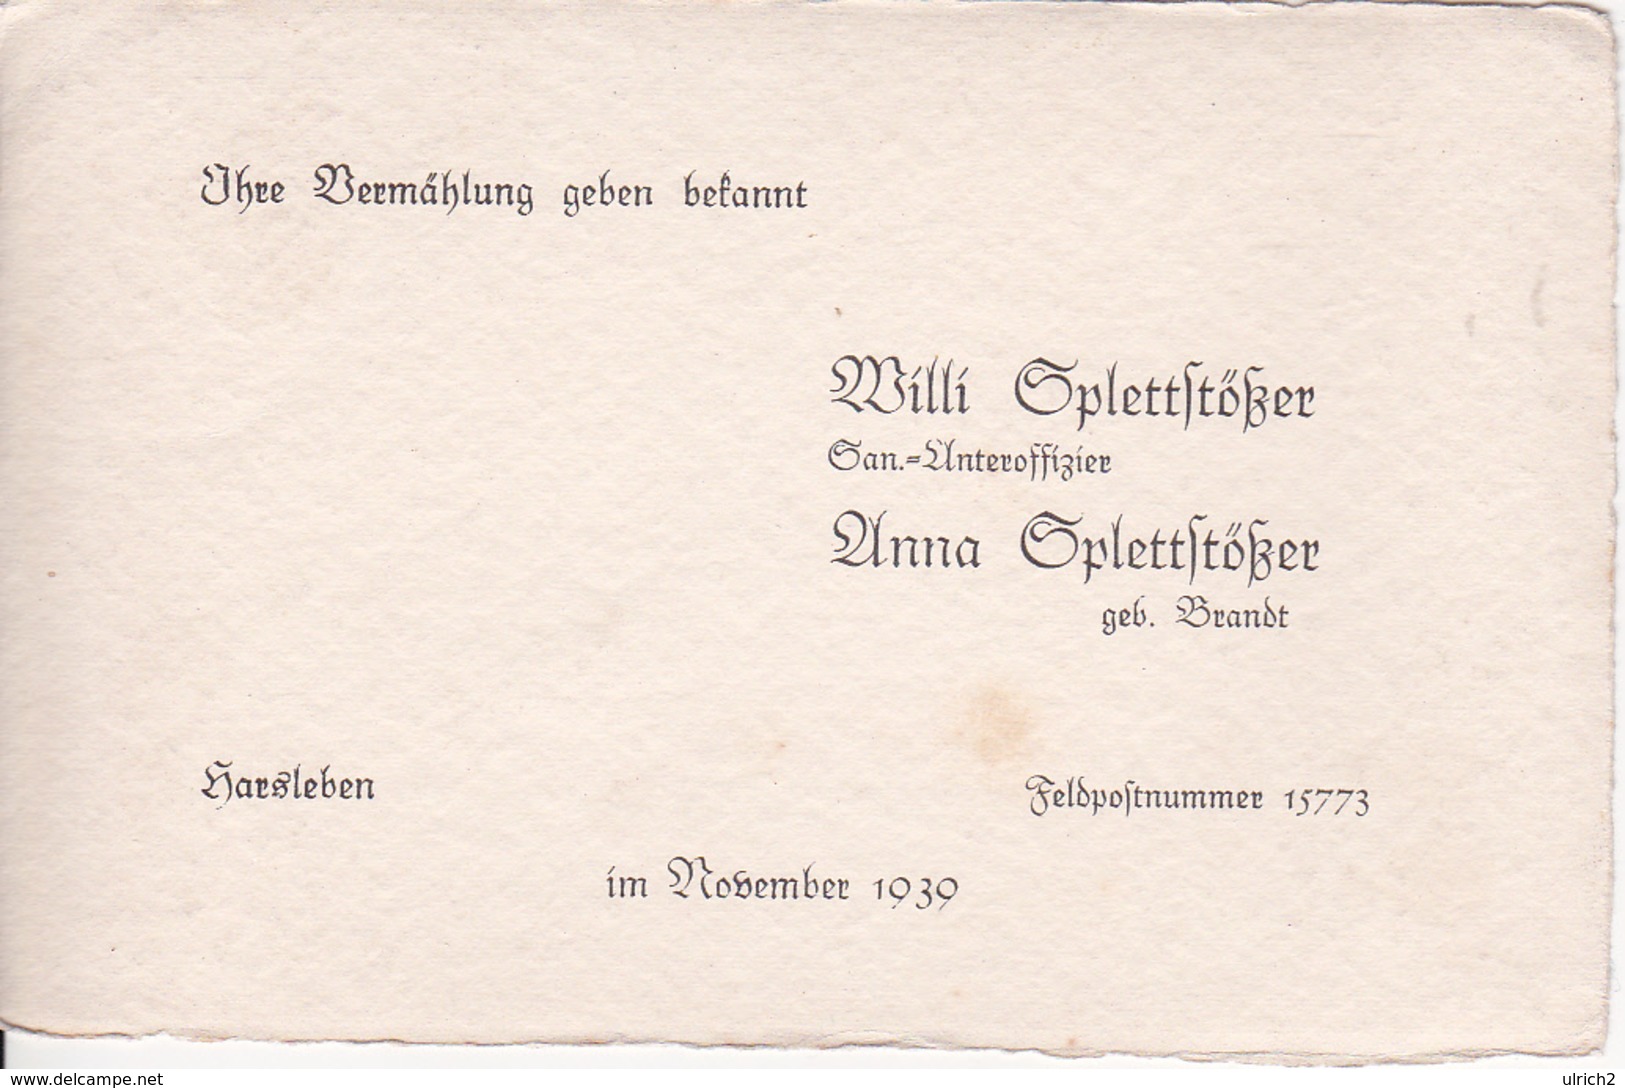 Vermählungs-Anzeige - Willi Und Anna Splettstößer - Harsleben / Feldpostnummer 15773 - November 1939 (26062) - Mariage